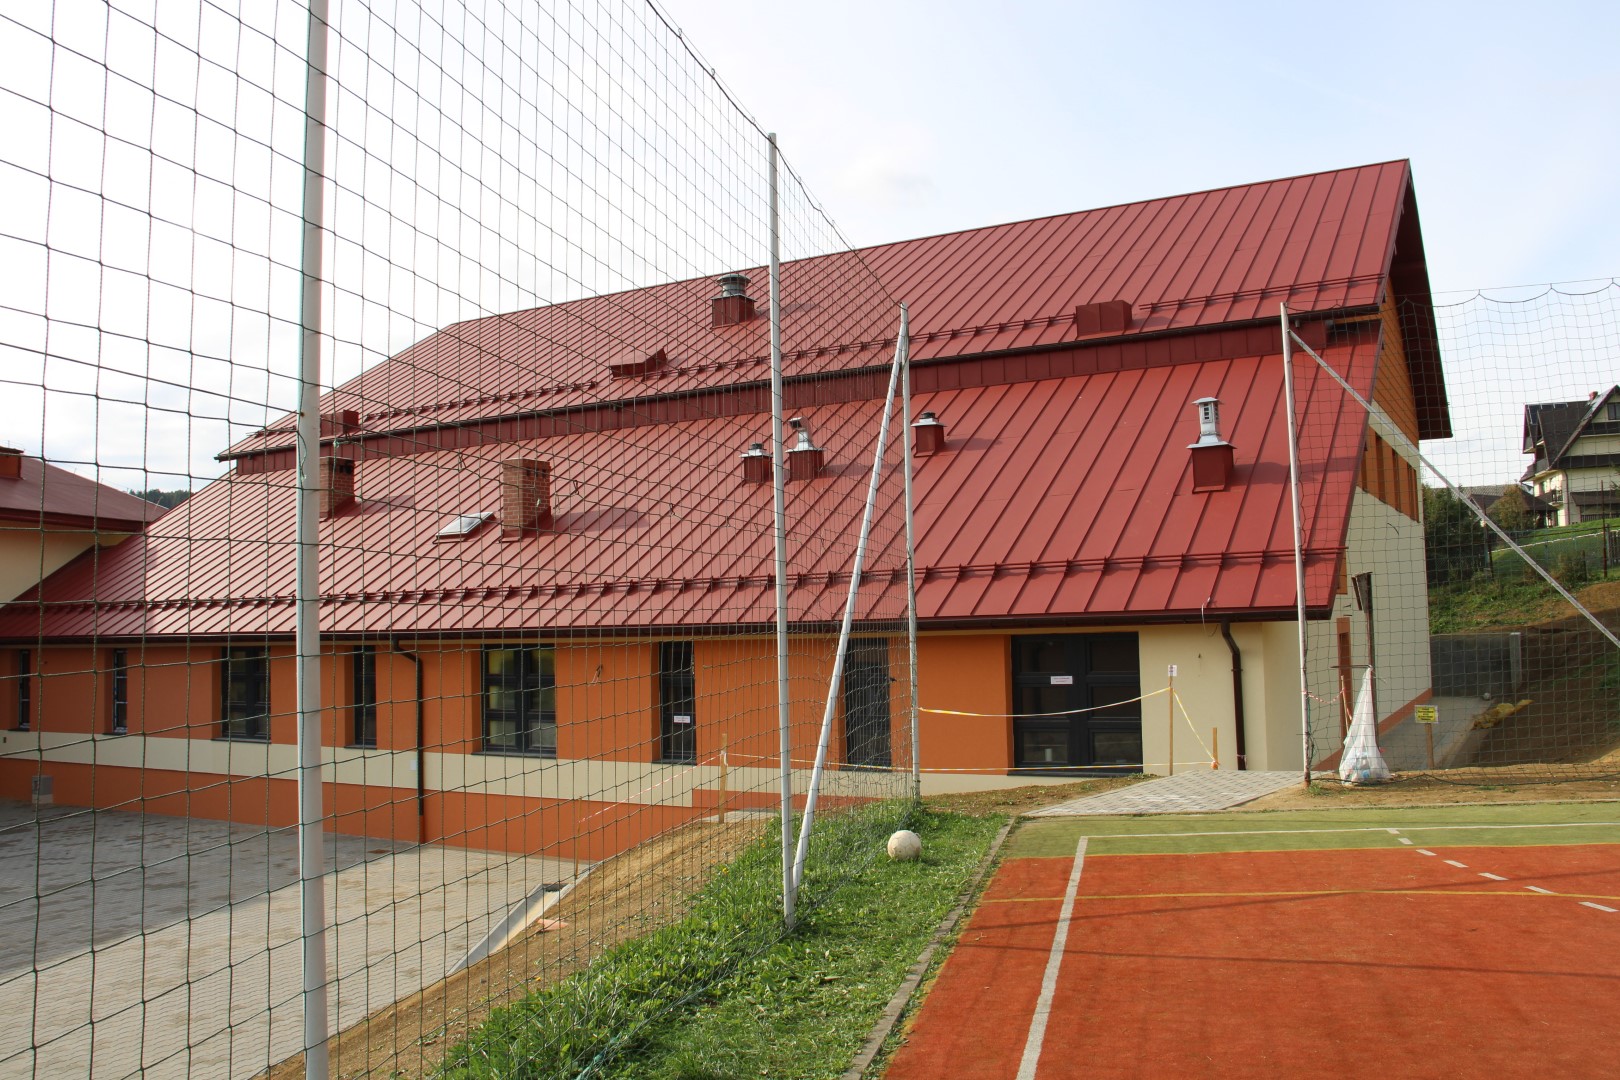 Sala gimnastyczna w Sromowcach Wyżnych jest przygotowana do odbioru